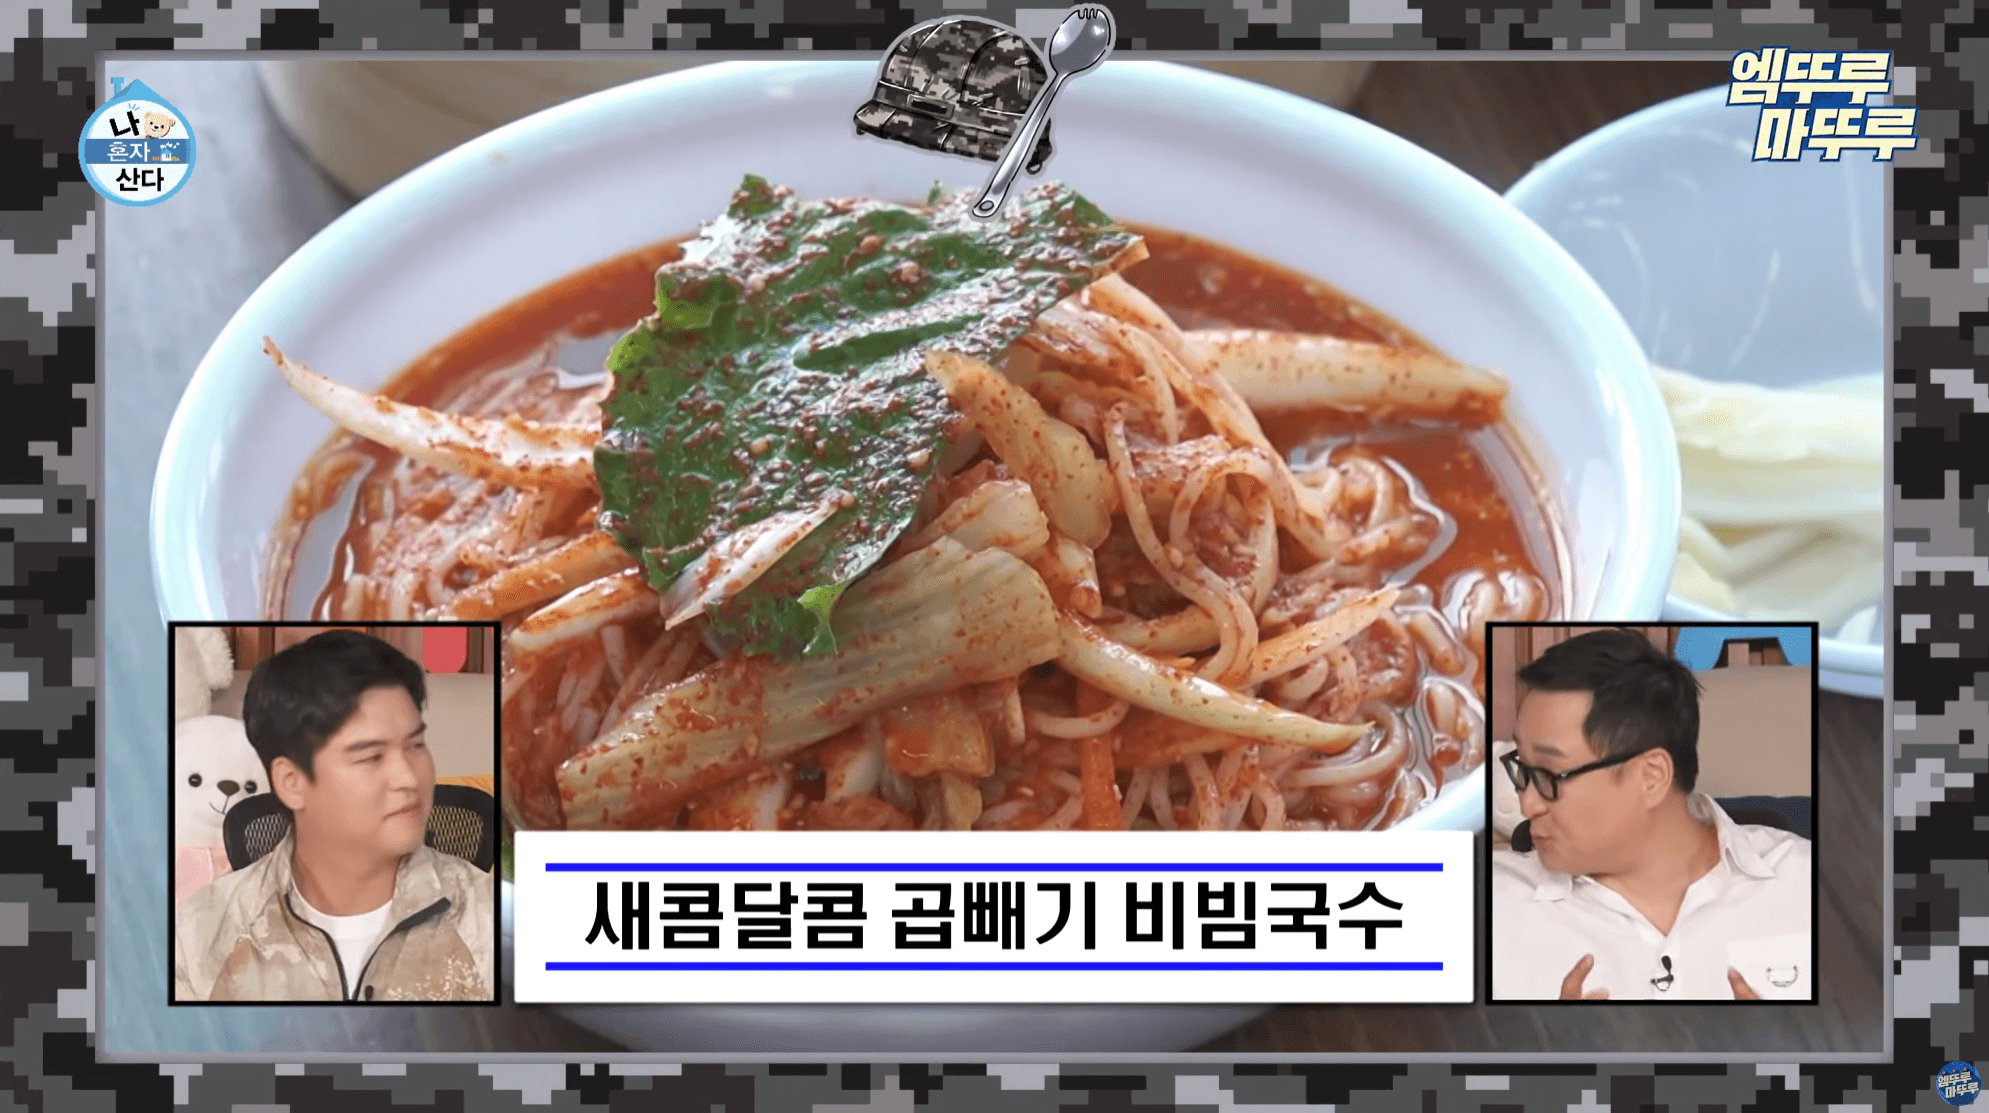 연천 맛집 소개 - 망향비빔국수 본점